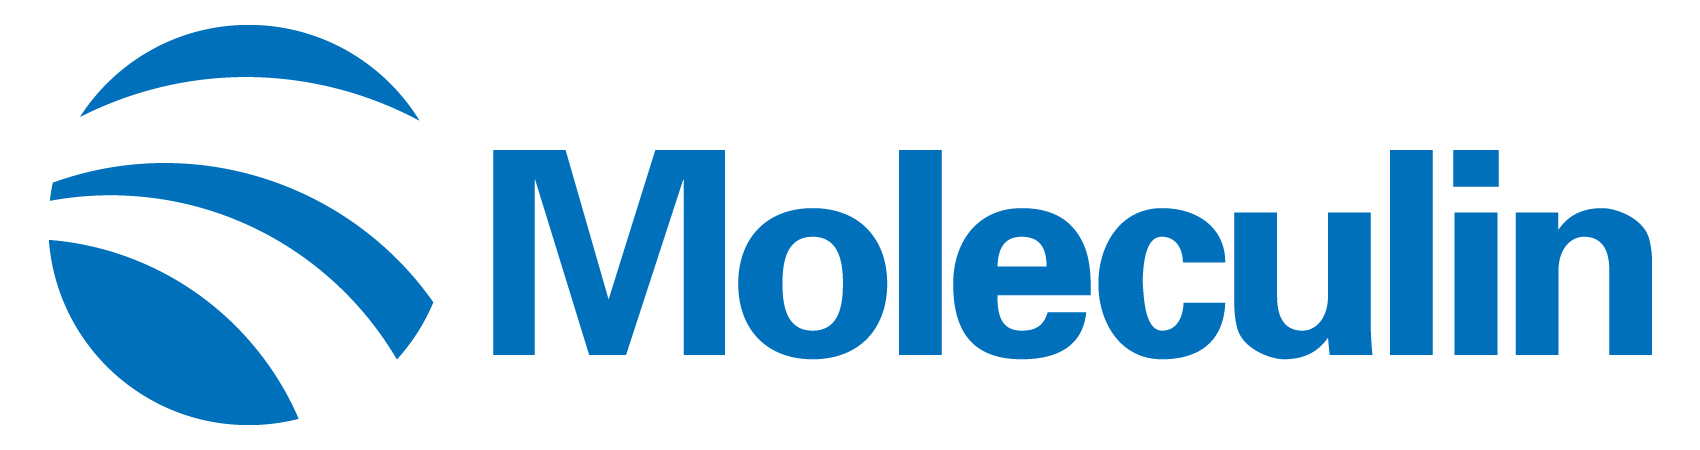 moleculin-logo_horiza20.jpg